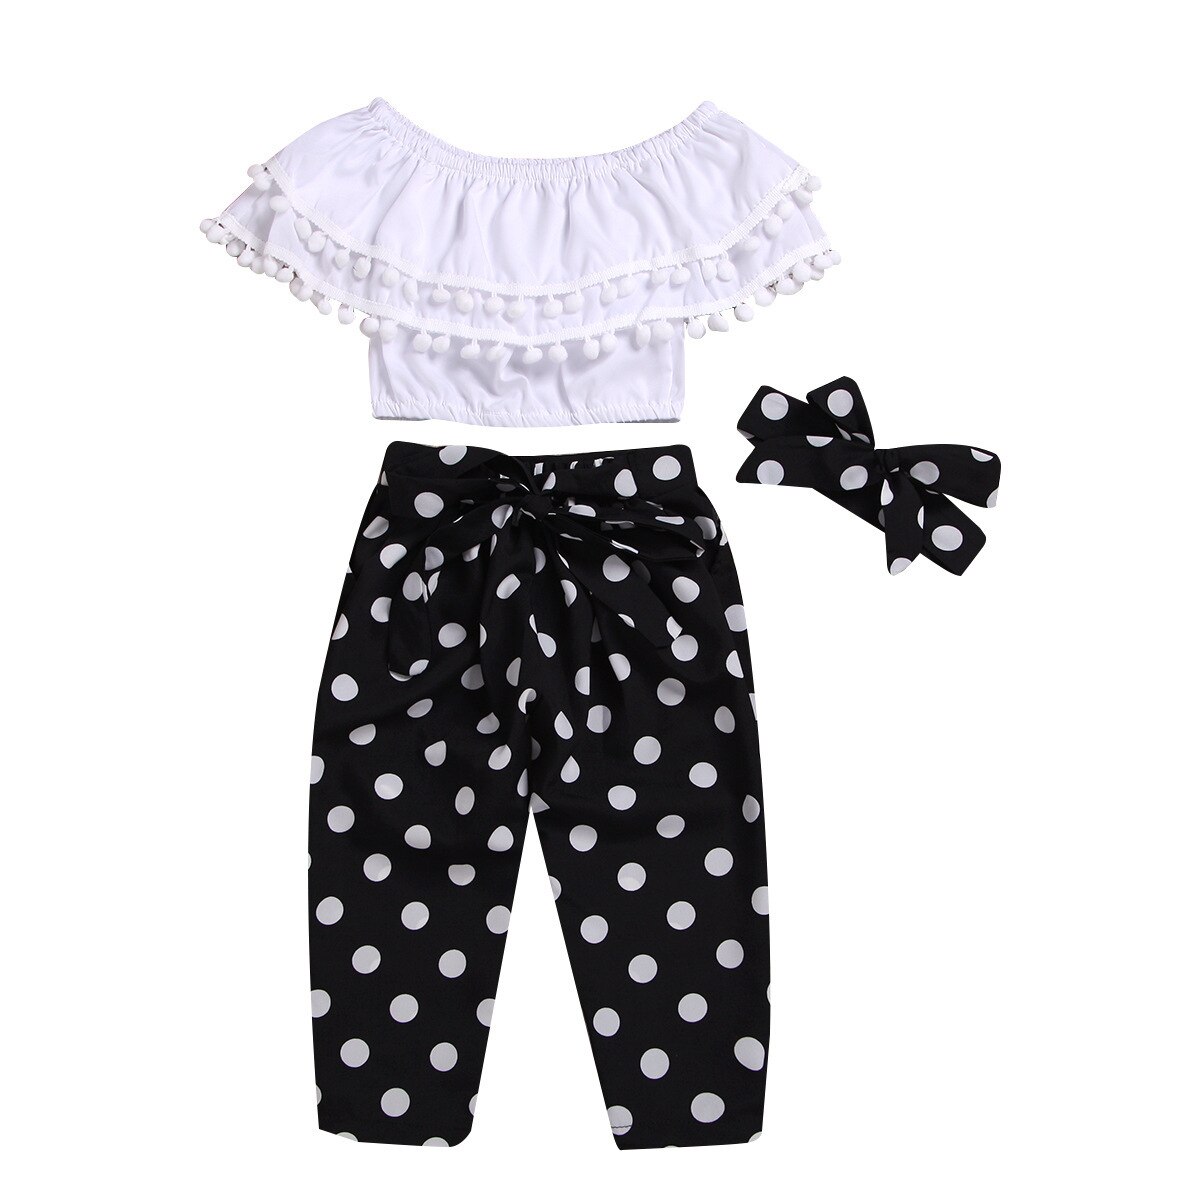 Summer-Baby-Girl-Clothing-Set-Casual-Short-Tops-T-shirt-Dots-Print-Black-Pants-Headband-3PCS-3